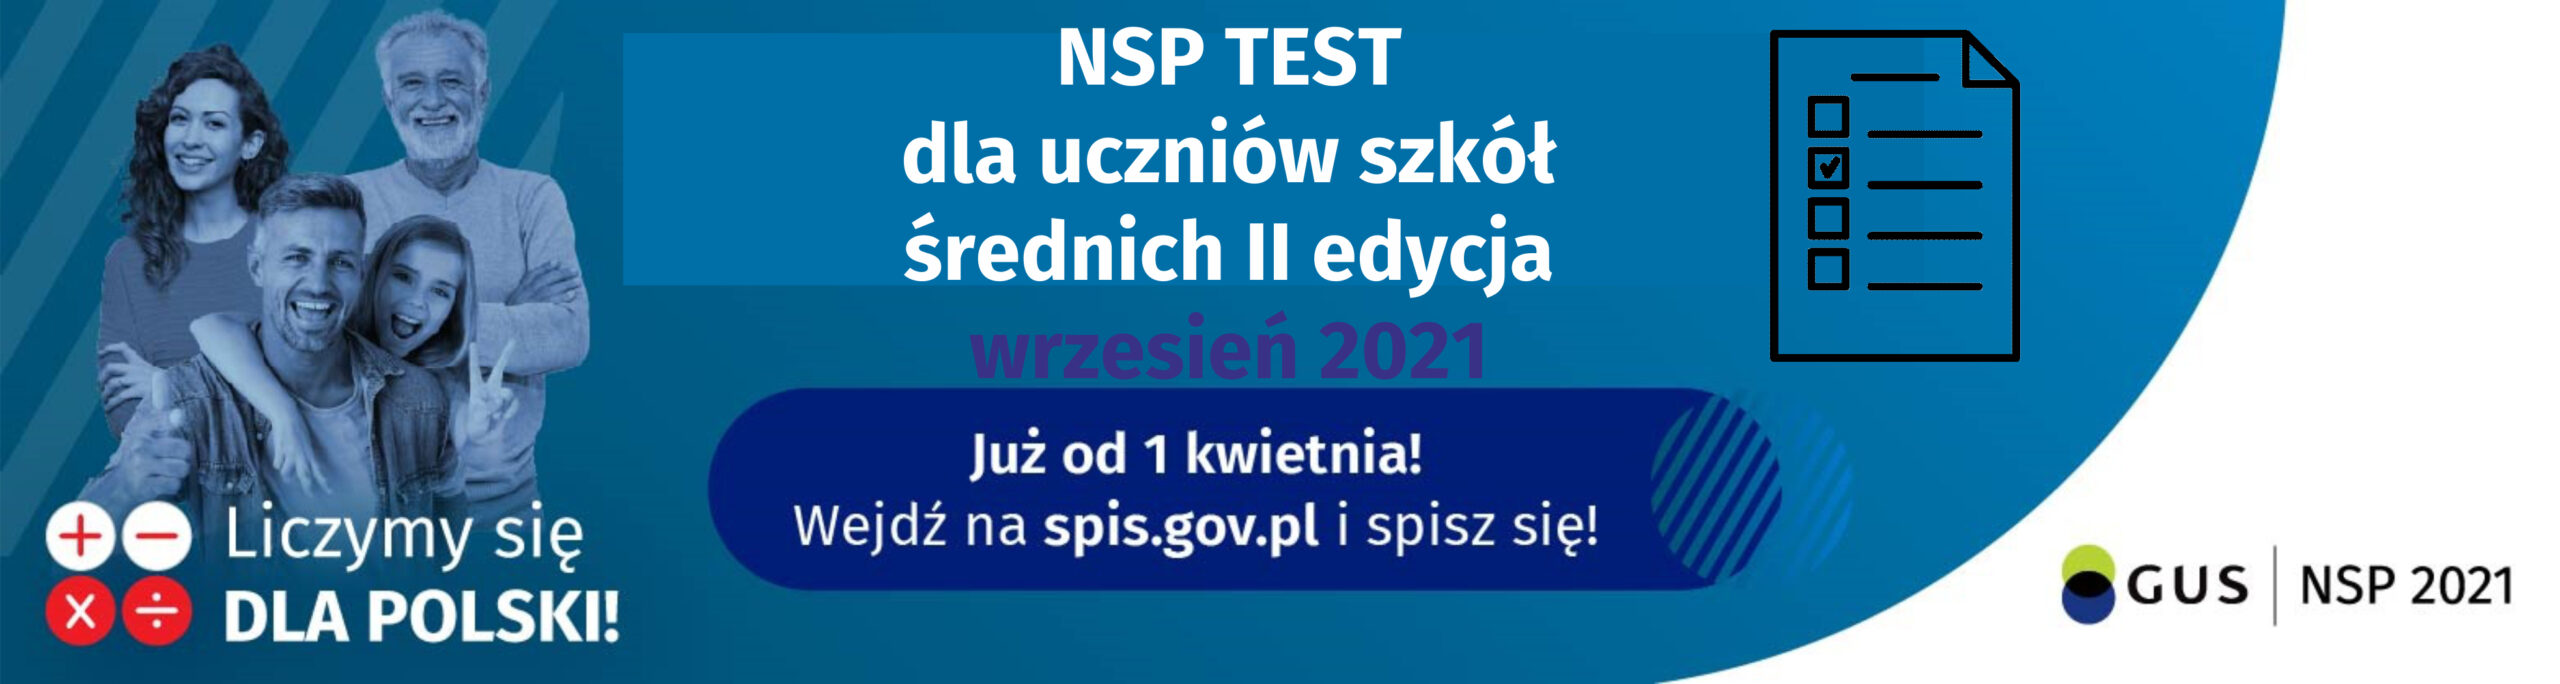 NSP test dla uczniow szkol srednich II edycja